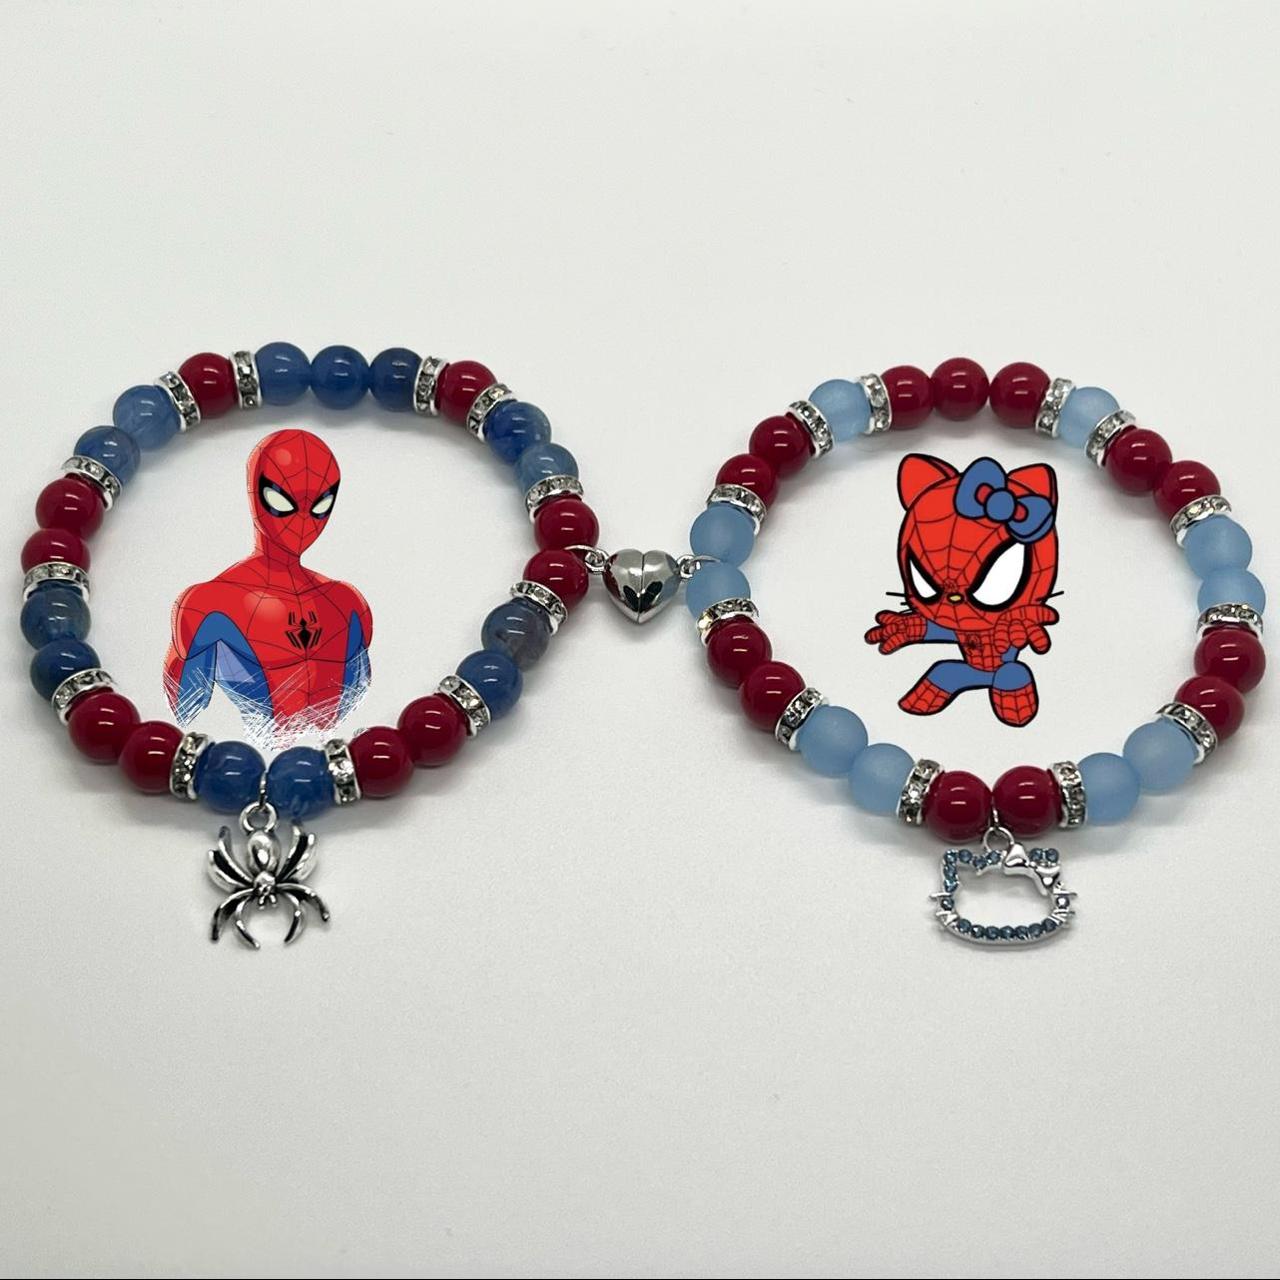 Spiderman Bracelets Hello Kitty Bracelets Matching Bracelets